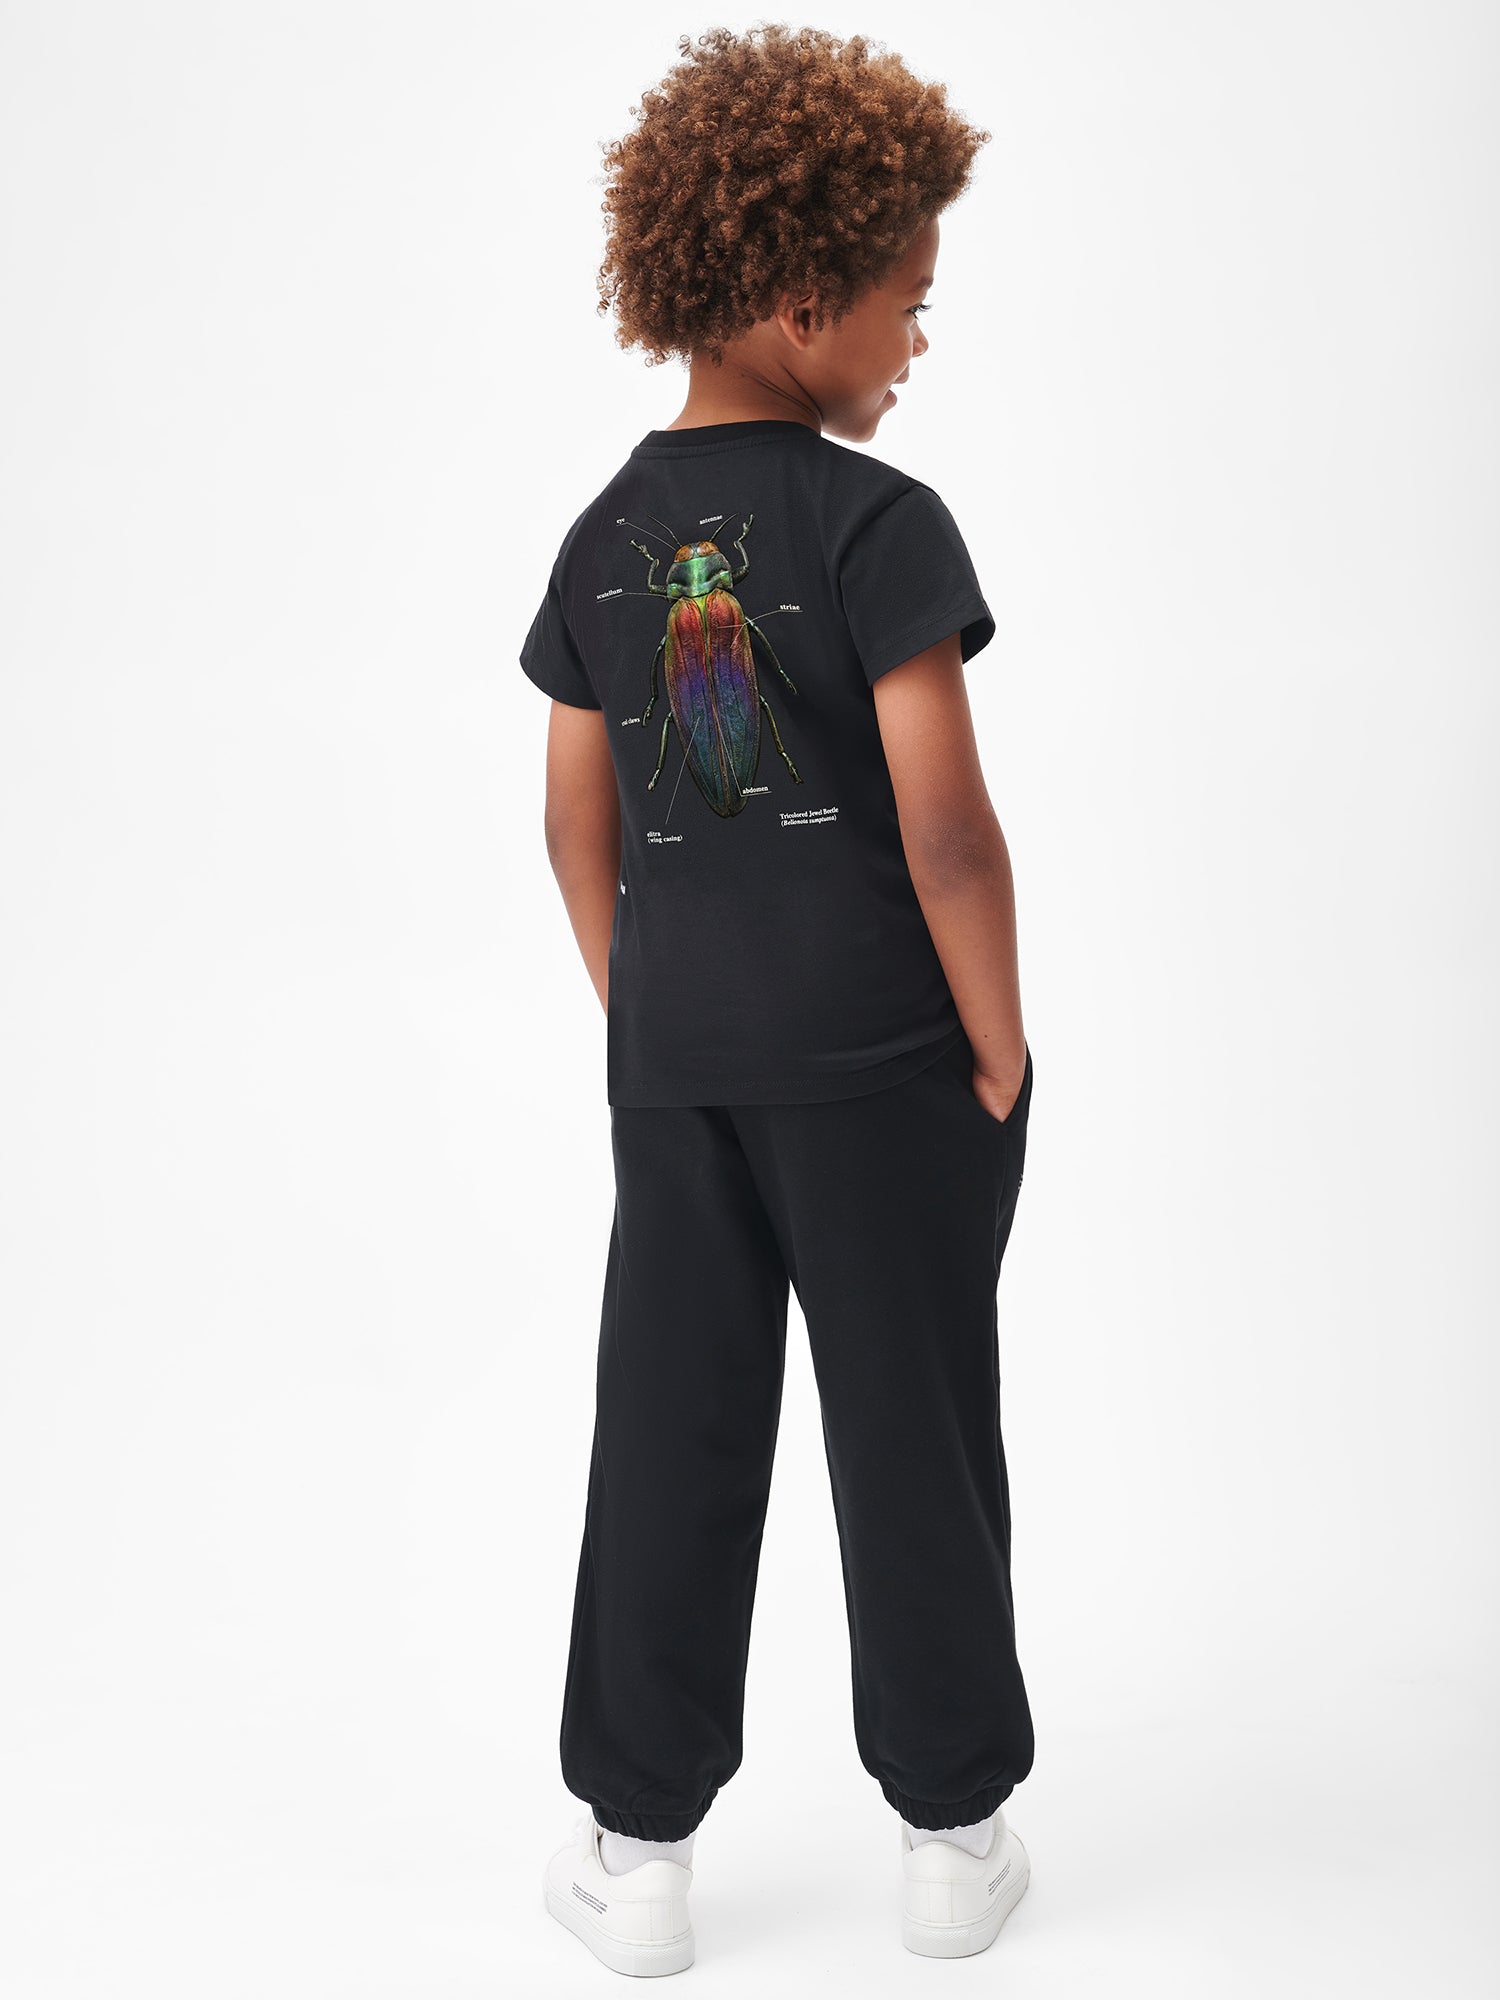 Kids-Levon-Biss-Graphic-T-Shirt-Black-2